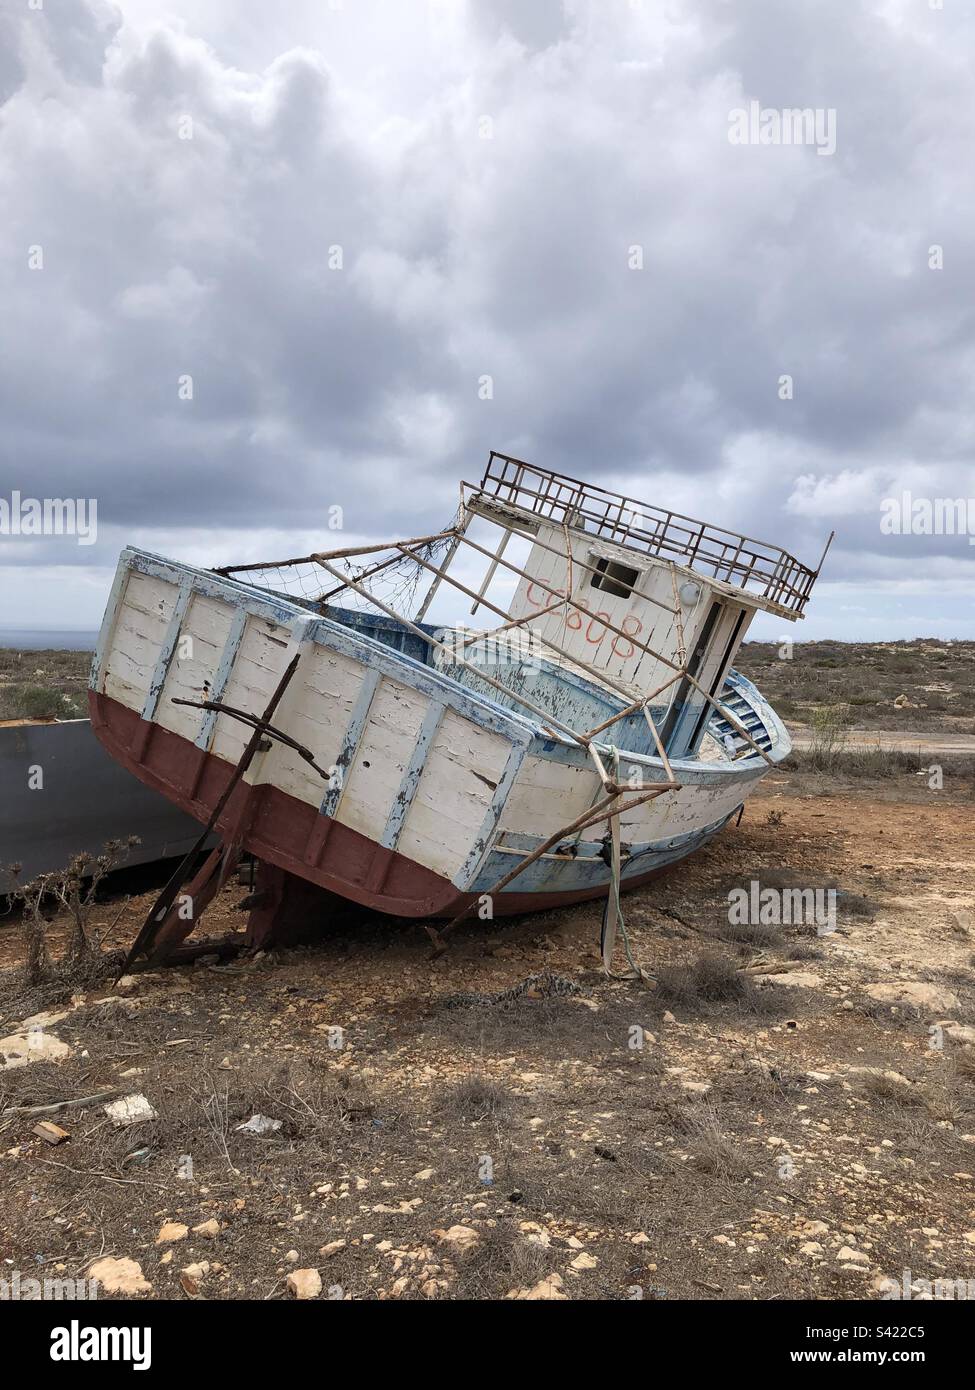 Barca abbandonata al largo della costa, usata per il trasporto di immigrati Stock Photo